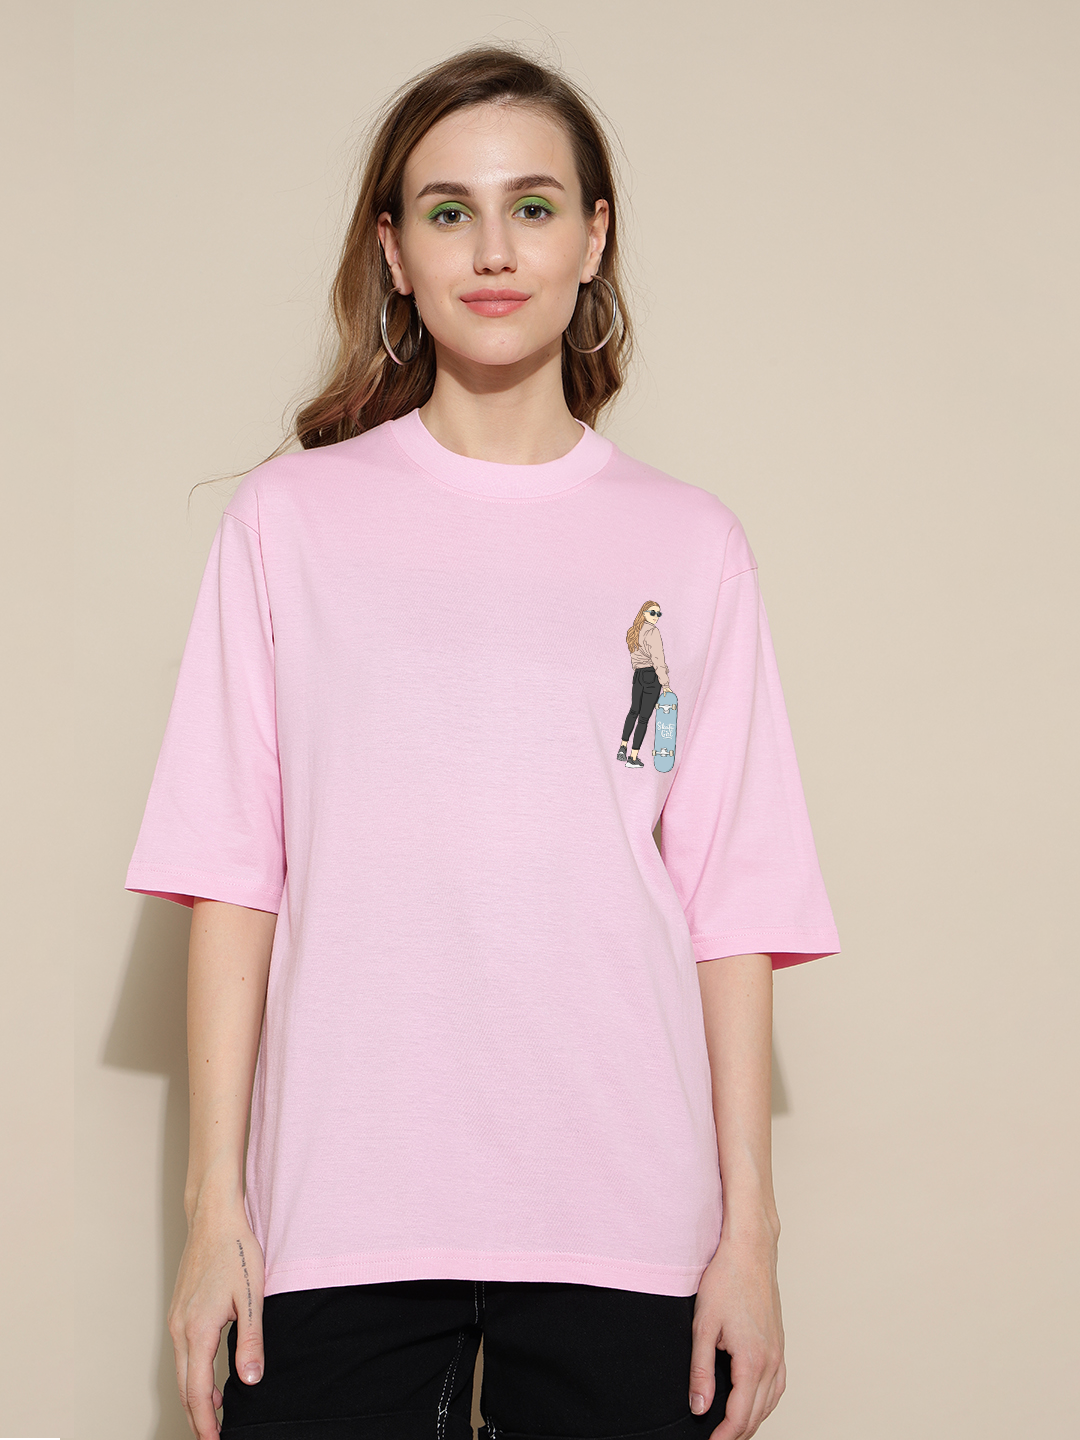 Skate Girl Pink Oversized Unisex T-shirt